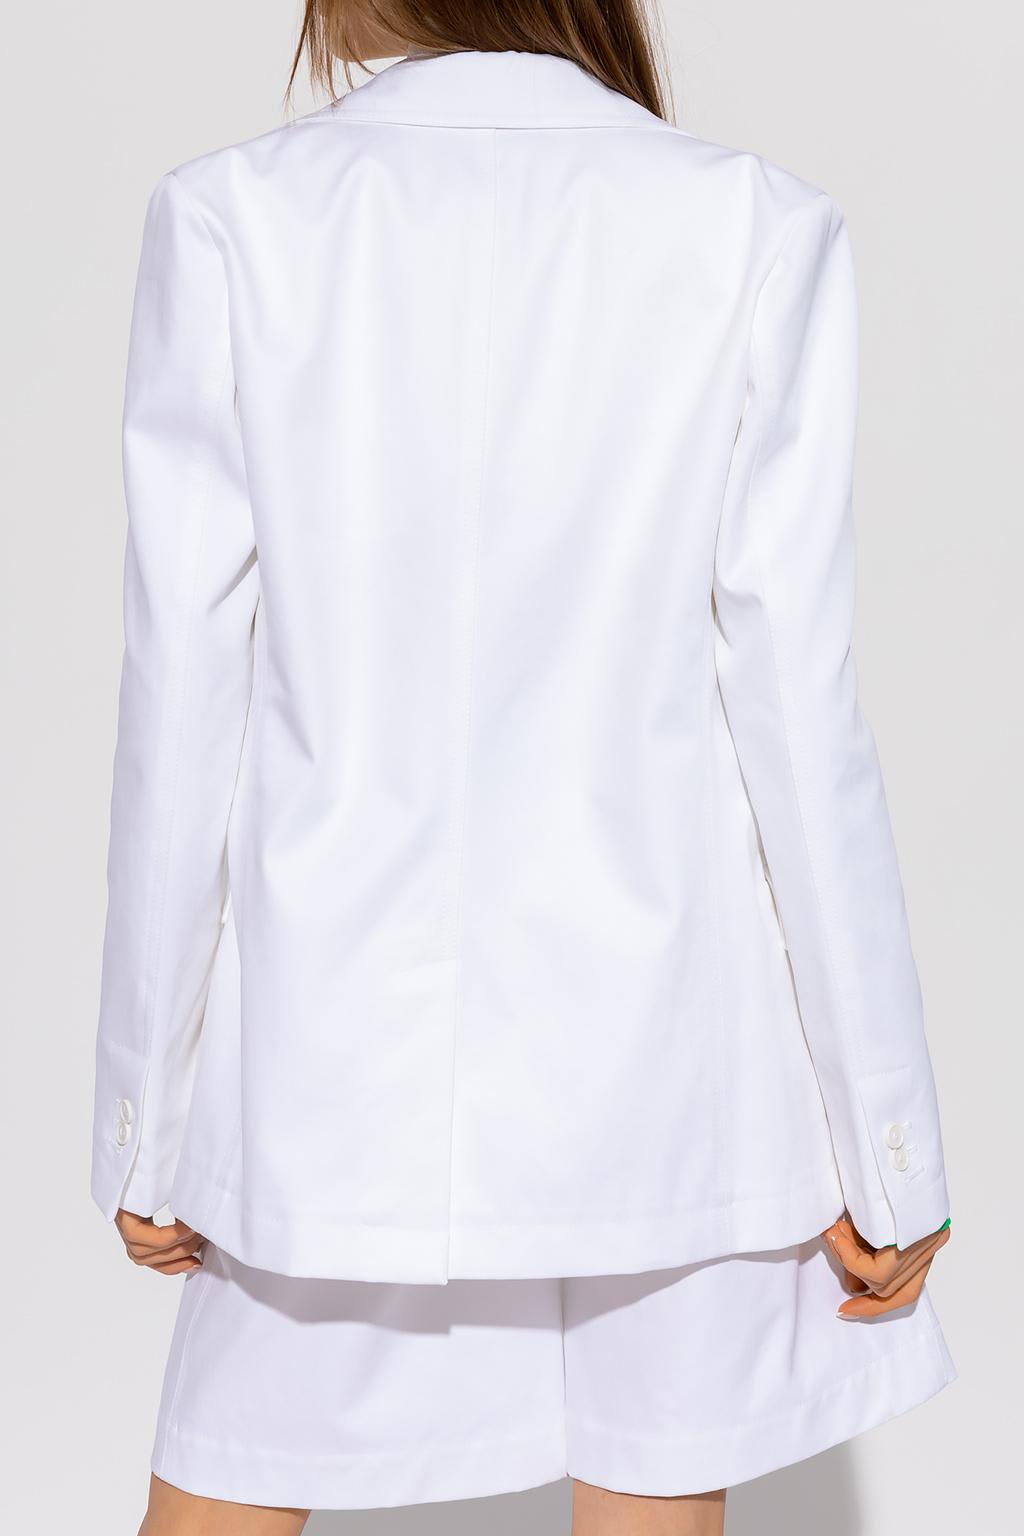 Shop Bottega Veneta Single-breasted Blazer In White